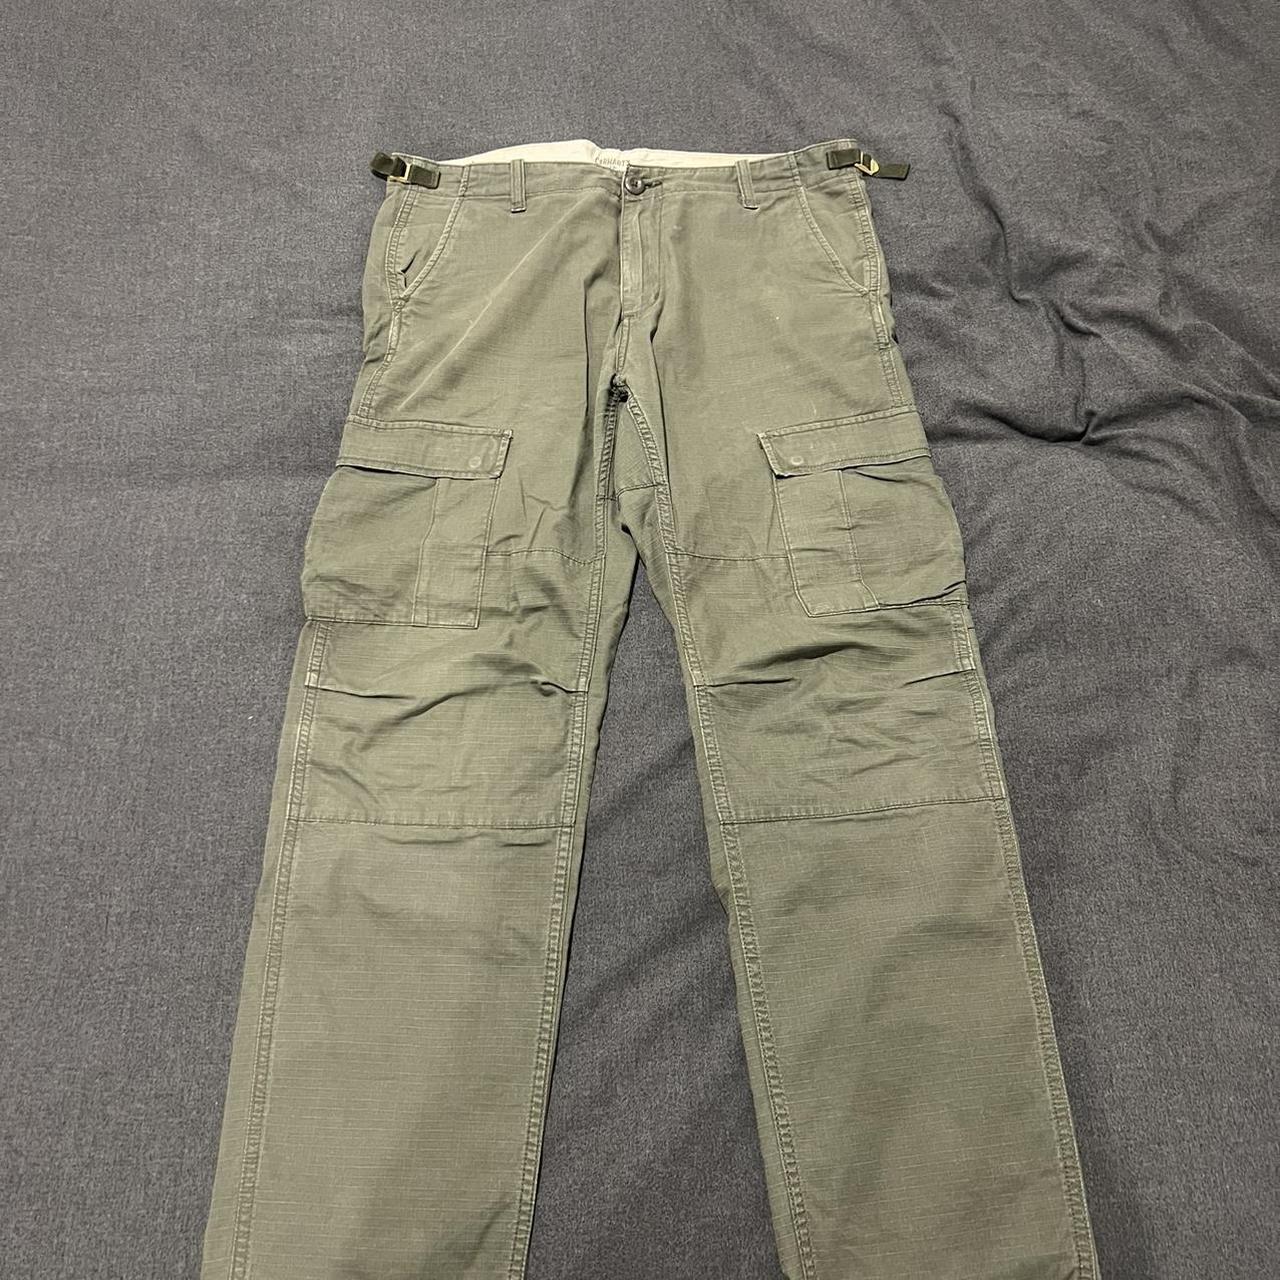 Carhartt WIP Aviation cargo pants in khaki size 32 - Depop